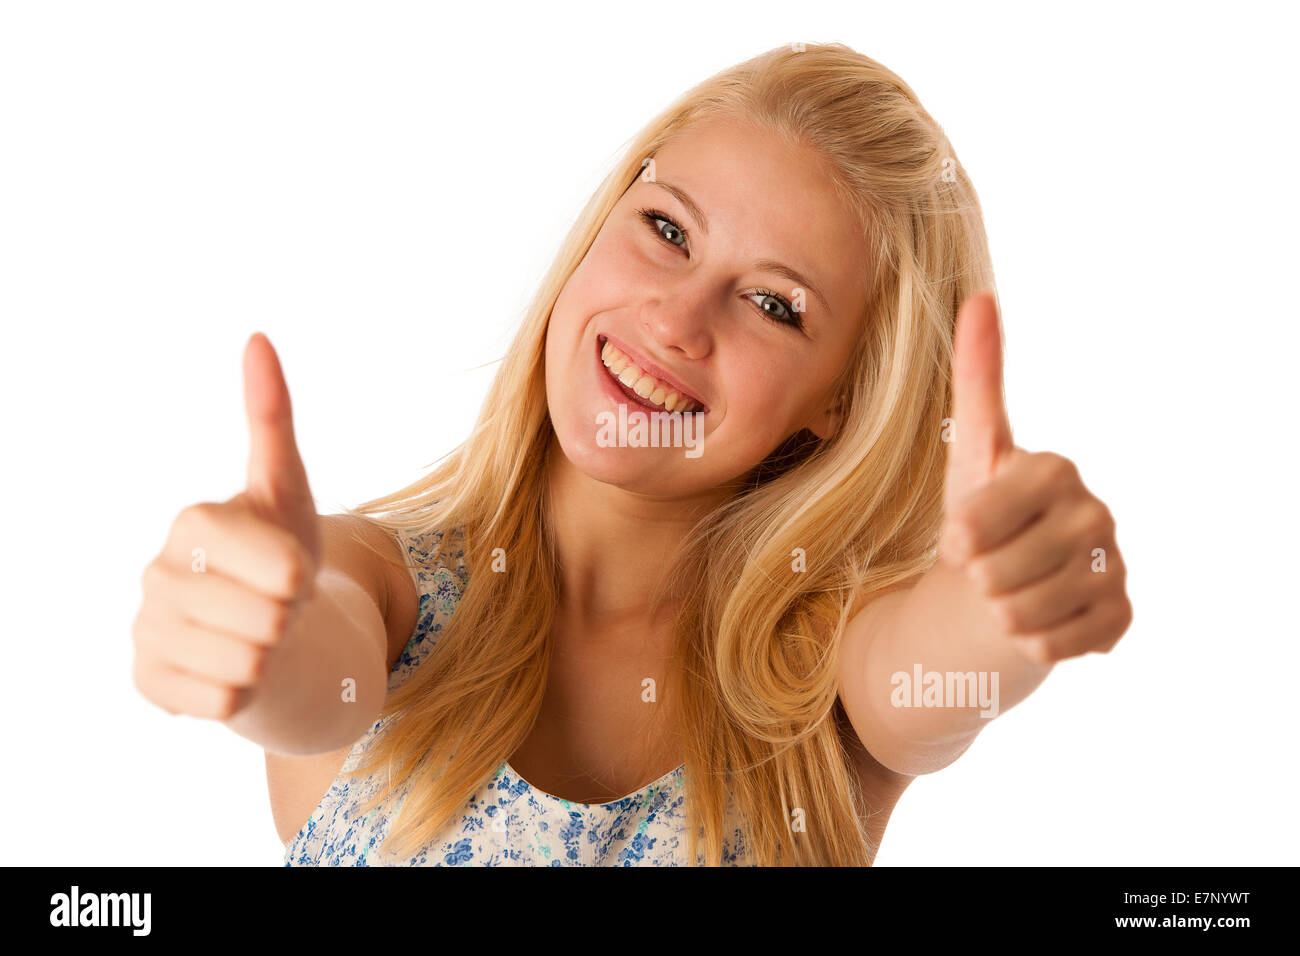 Young business donna con capelli biondi e occhi blu gesticolando successo mostra pollice in alto isolato su bianco Foto Stock